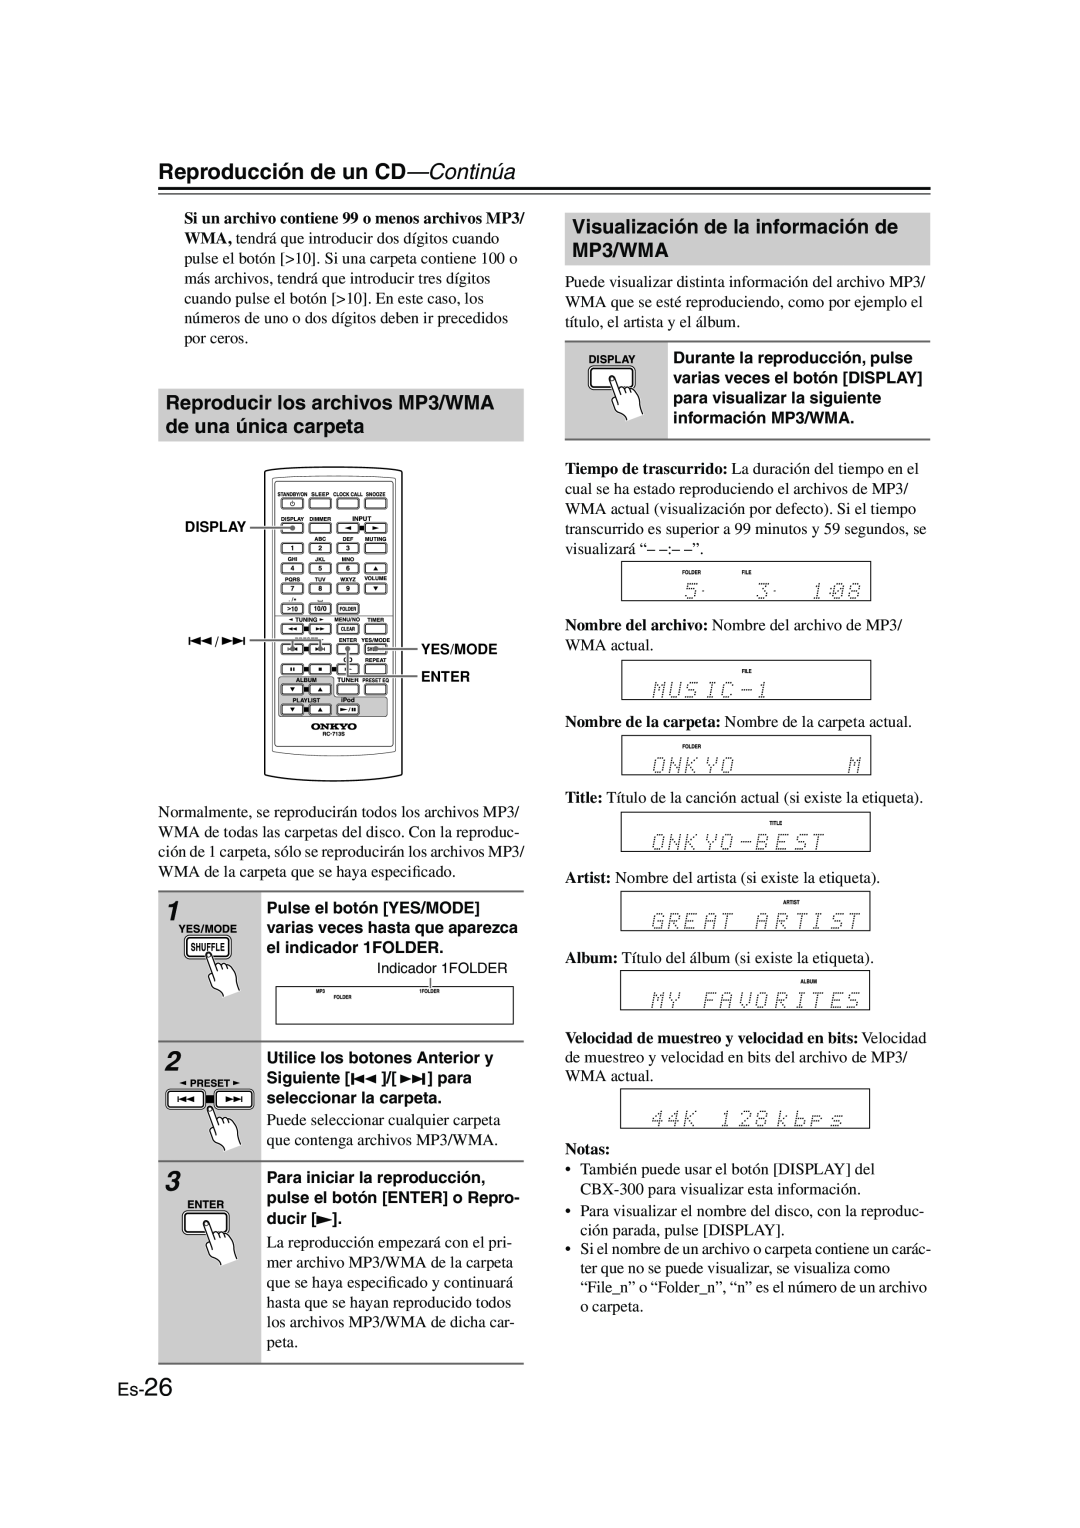 Onkyo CBX-300 instruction manual Visualización de la información de MP3/WMA, Es-26, Reproducción de un CD—Continúa, Notas 